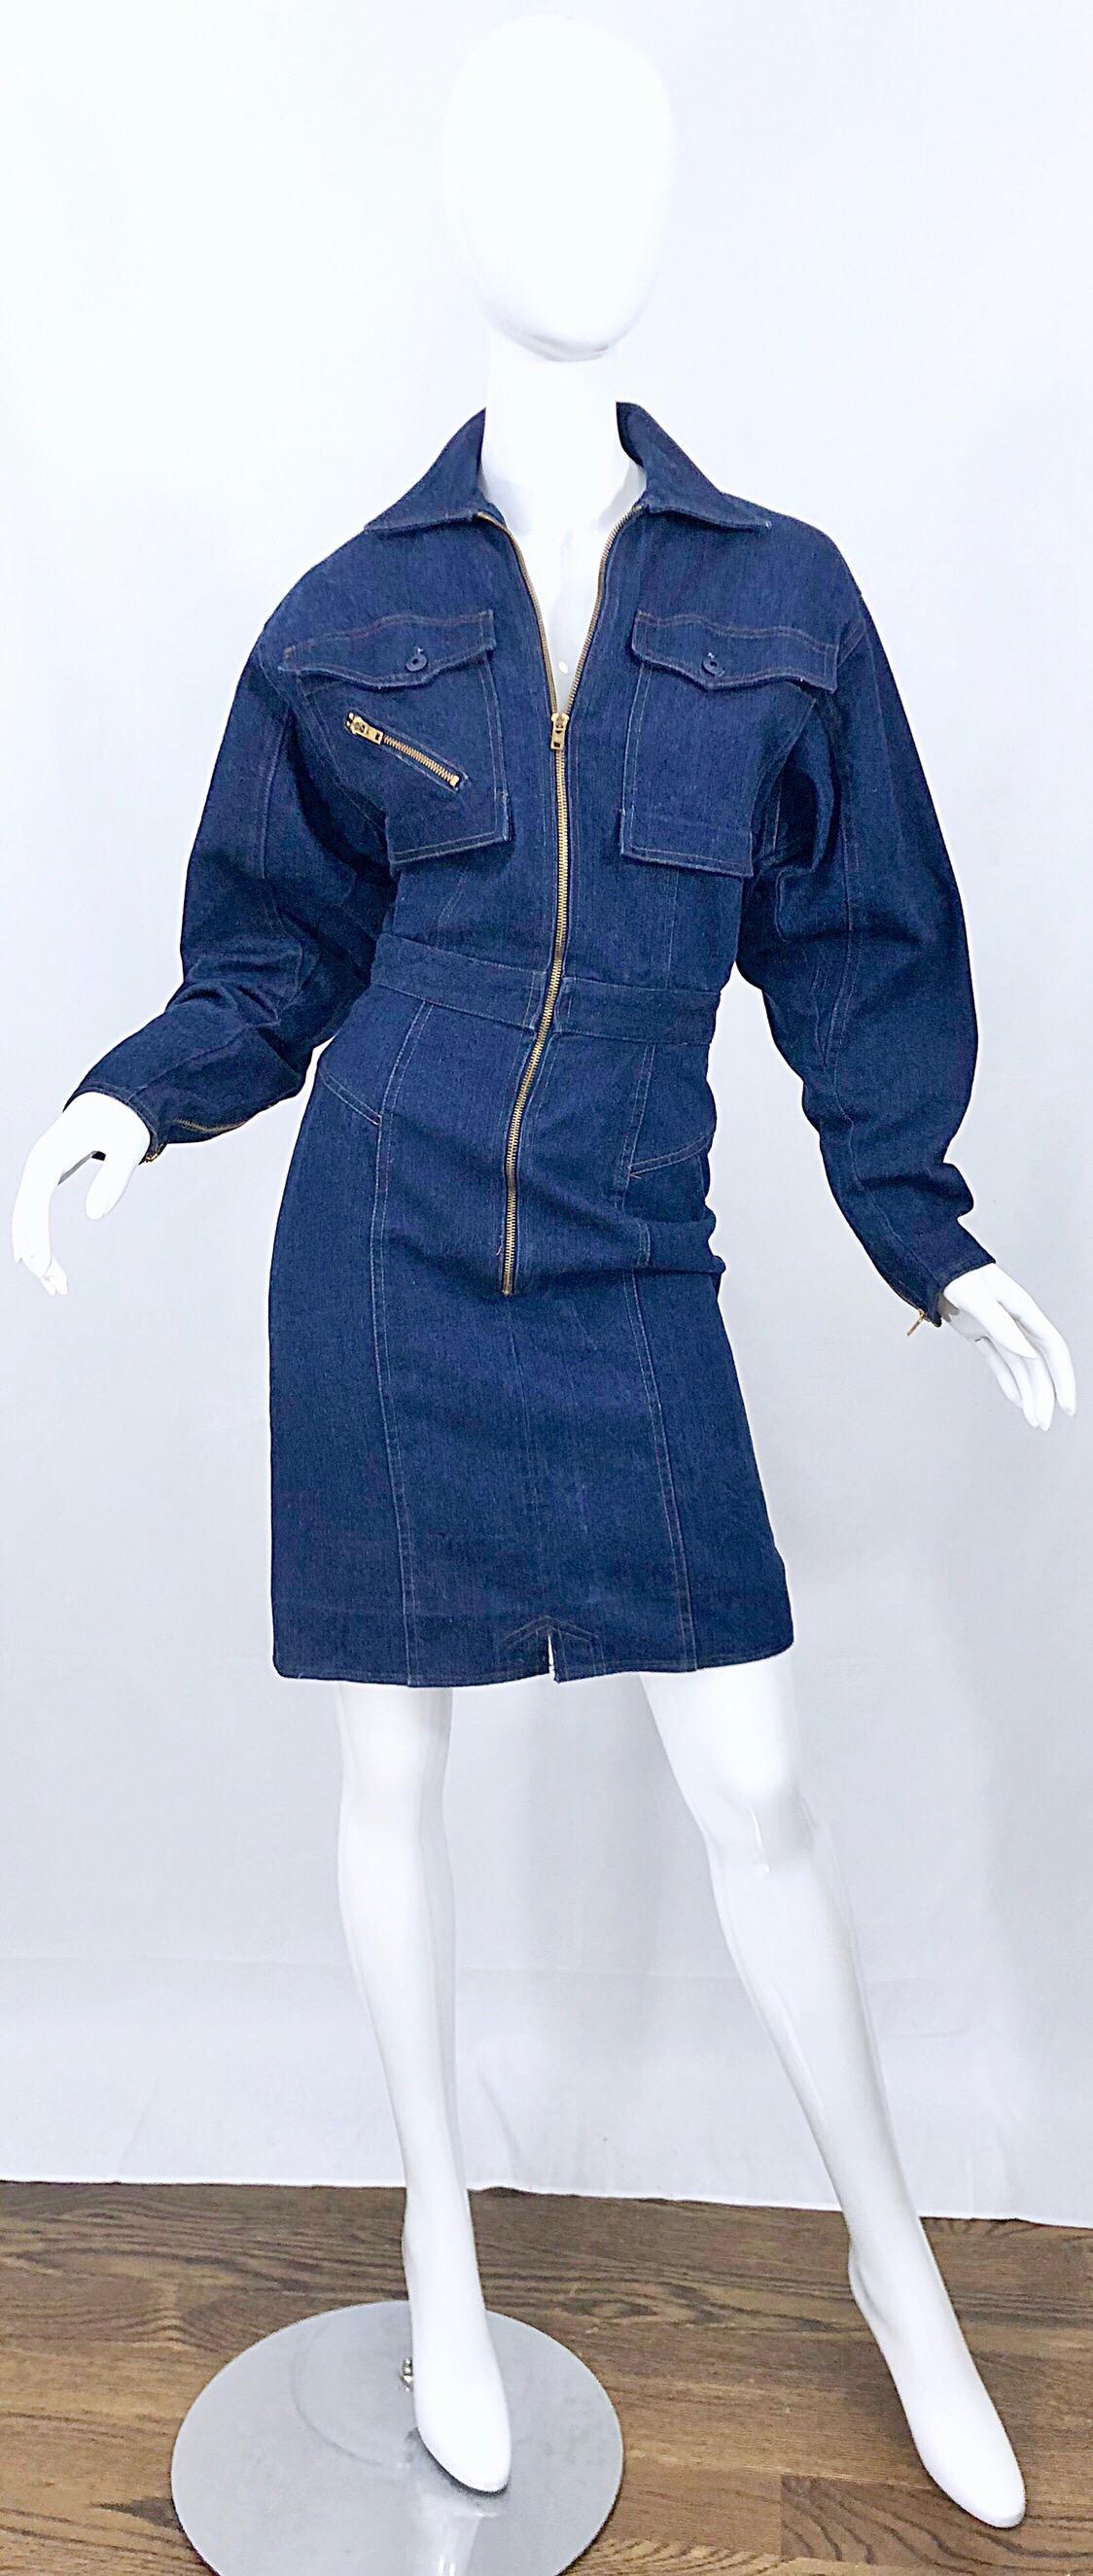 Superbe robe moto en jean bleu Avant Garde du milieu des années 1980 ! Il est doté d'une fermeture à glissière en métal doré sur le devant, d'une fermeture à glissière asymétrique sur la poche de poitrine droite et sur l'arrière. Fermeture par